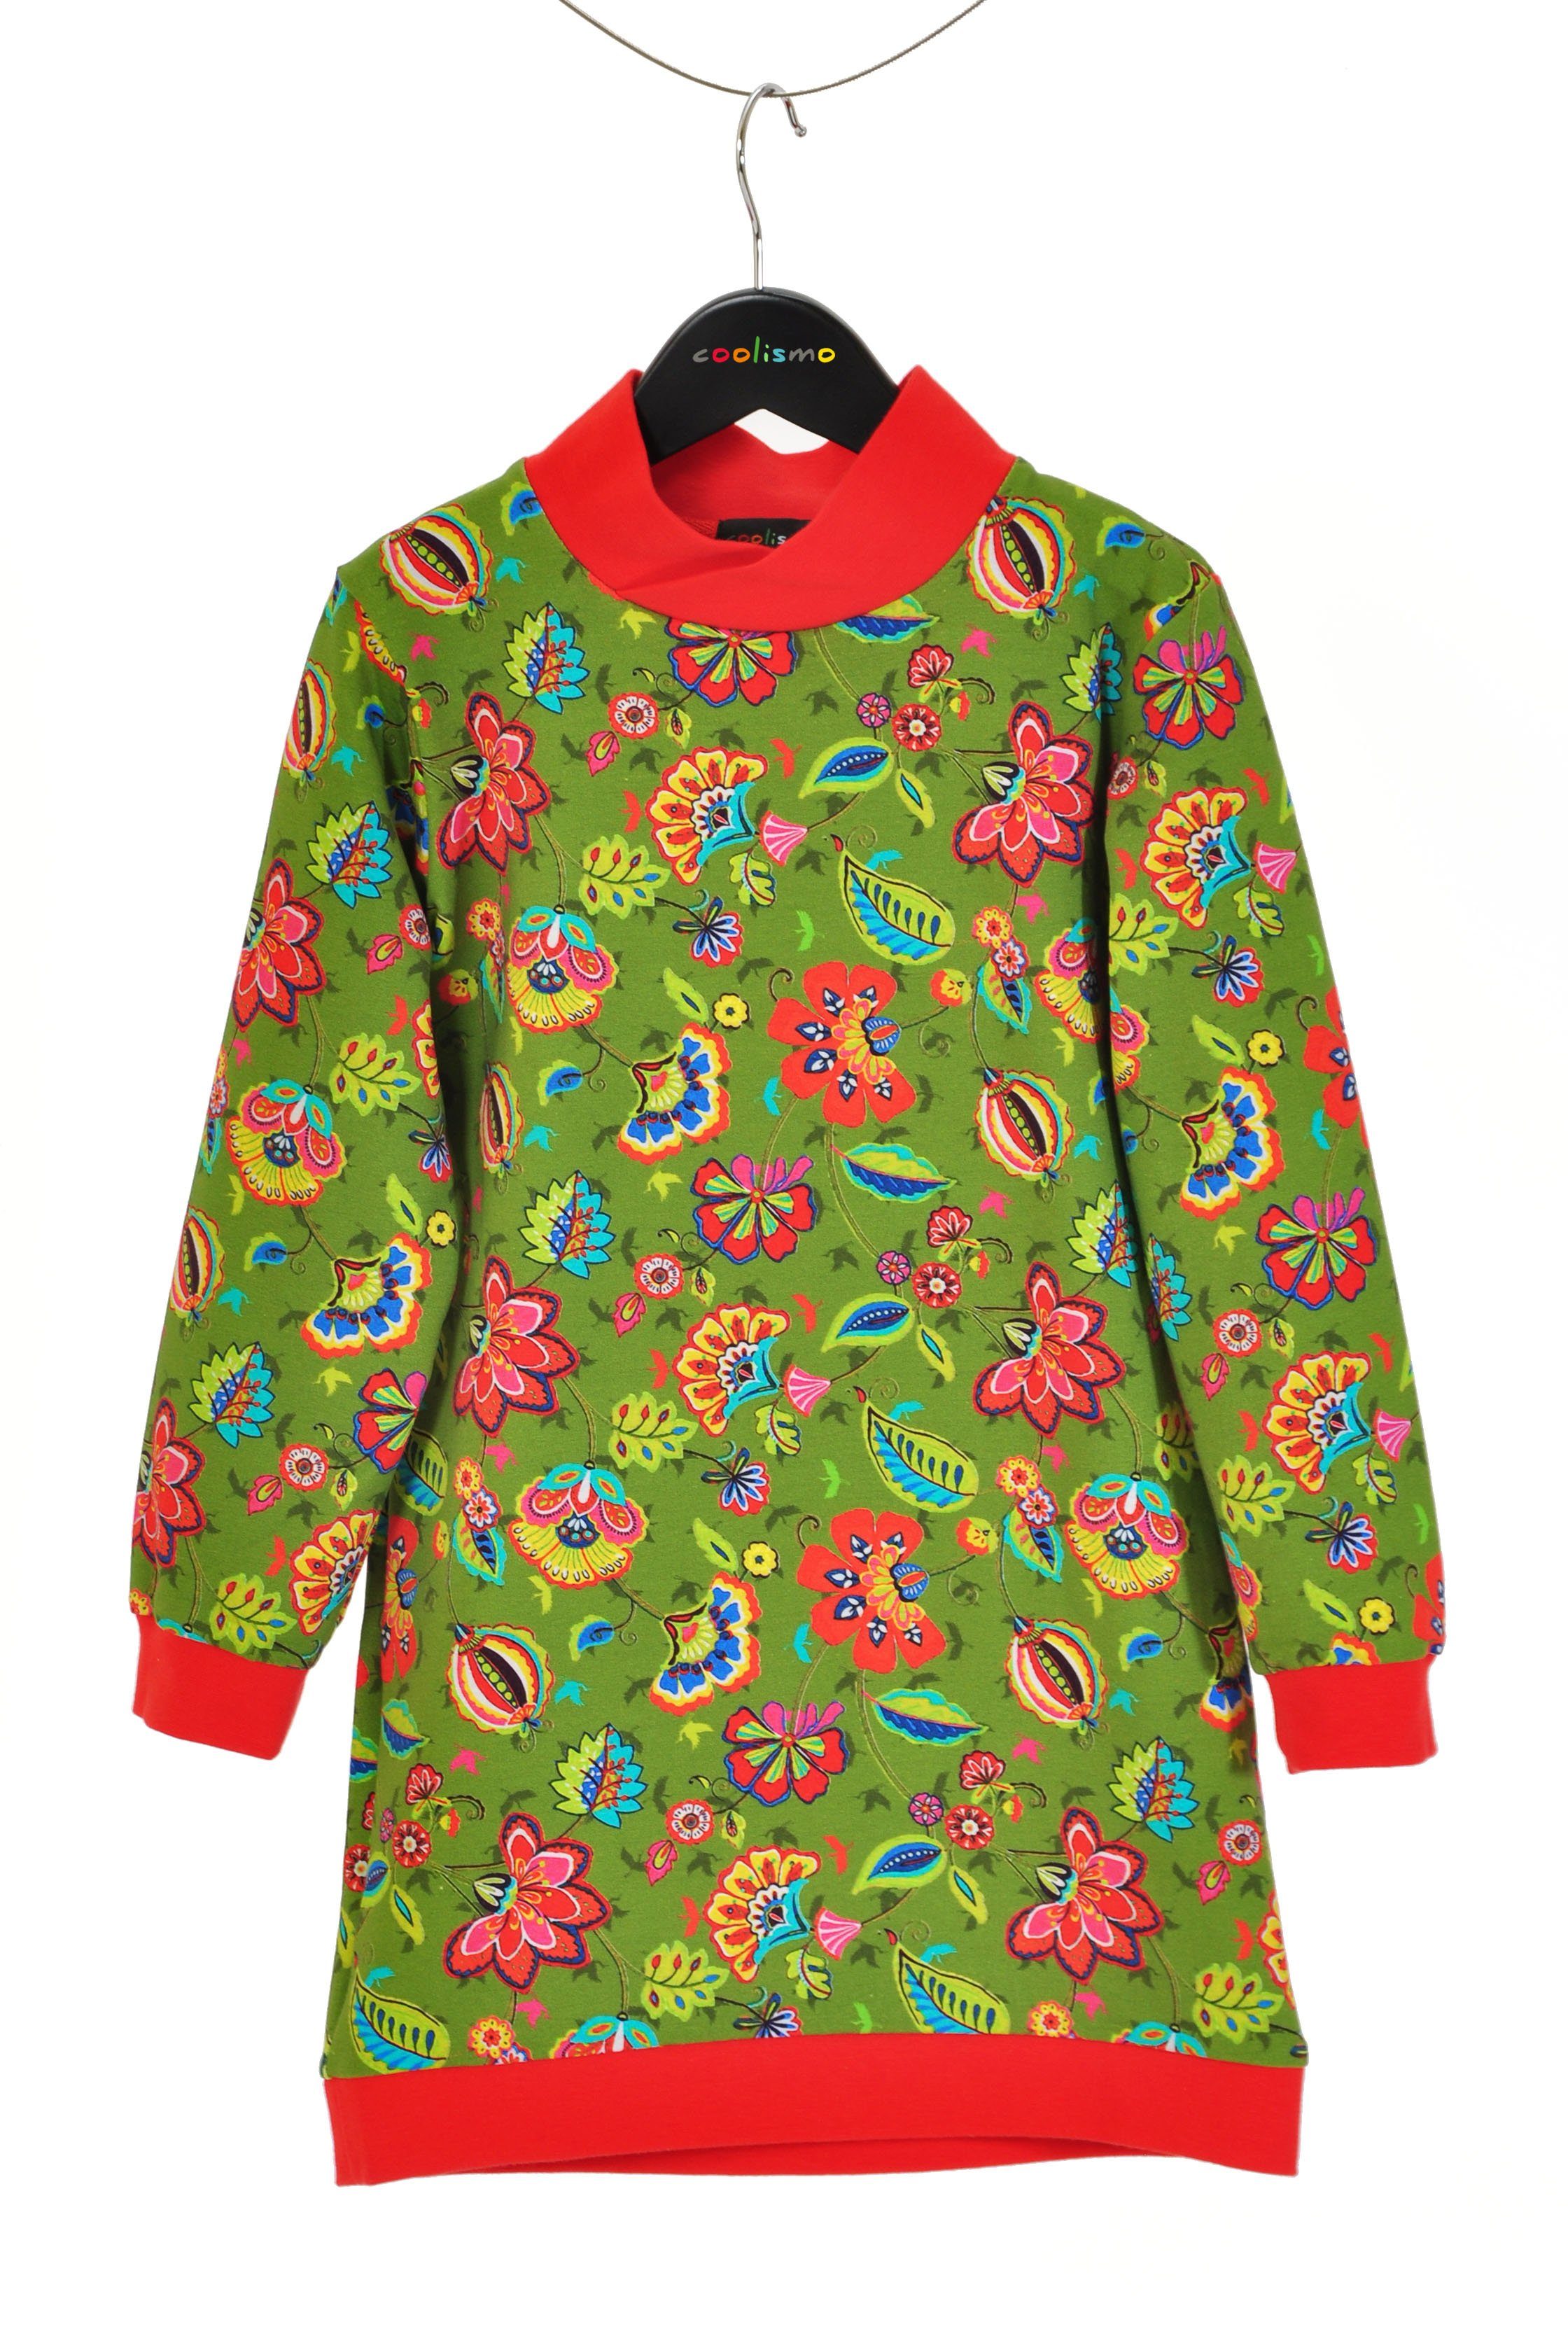 coolismo Sweatkleid Sweatshirt Kleid für mit Produktion europäische oliv Mädchen coole Motivdruck Blumen